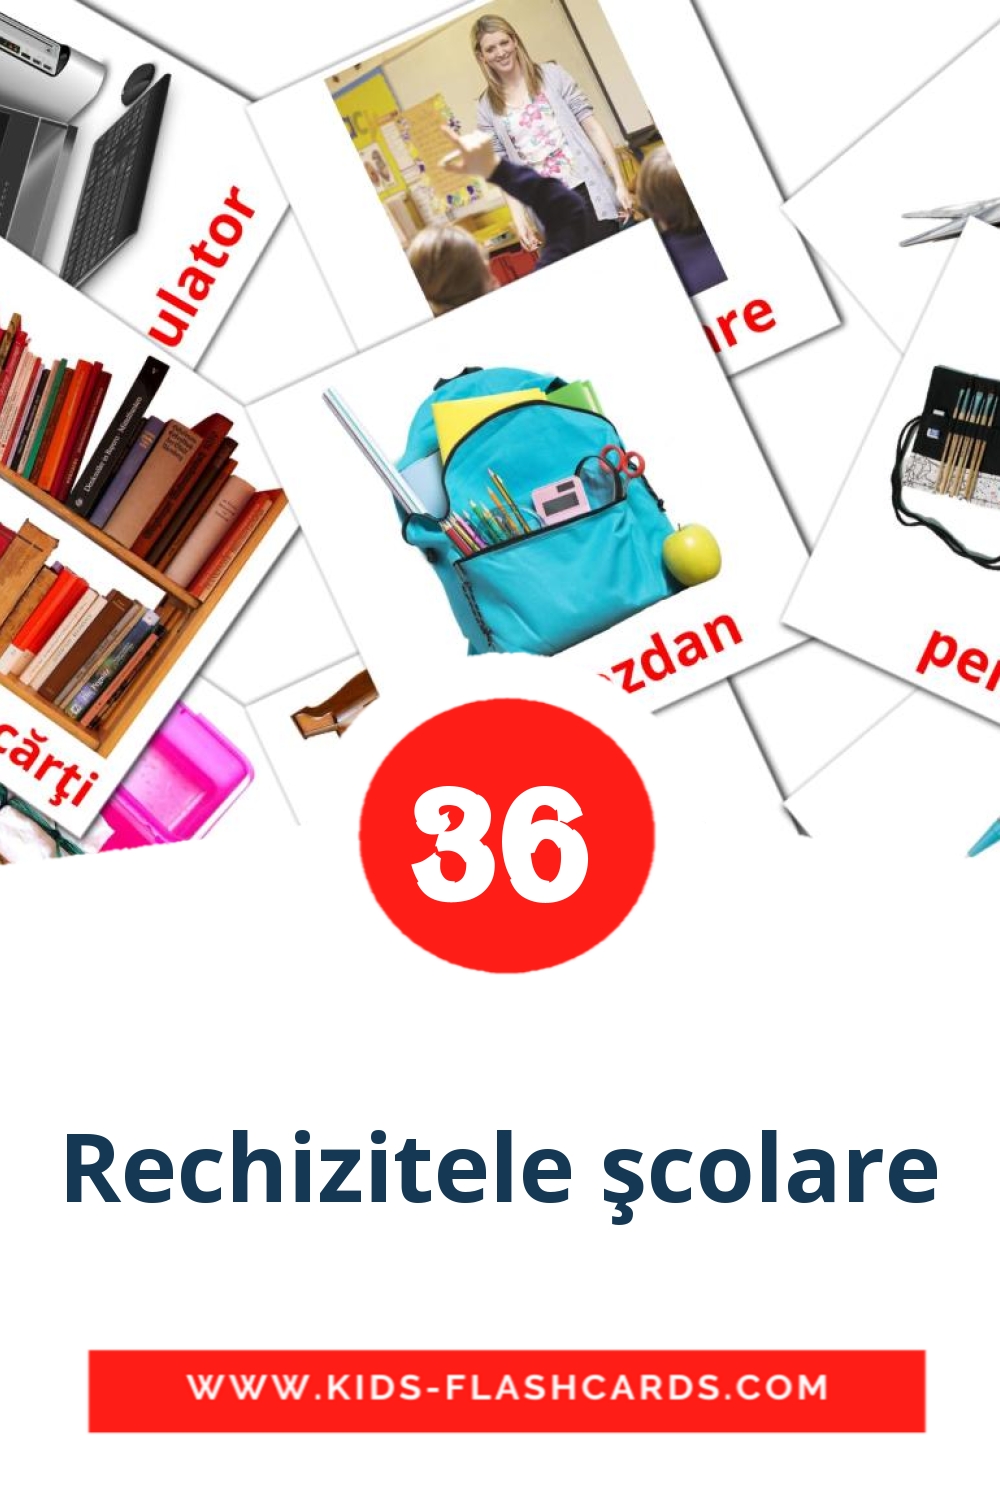 Rechizitele şcolare на румынском для Детского Сада (36 карточек)